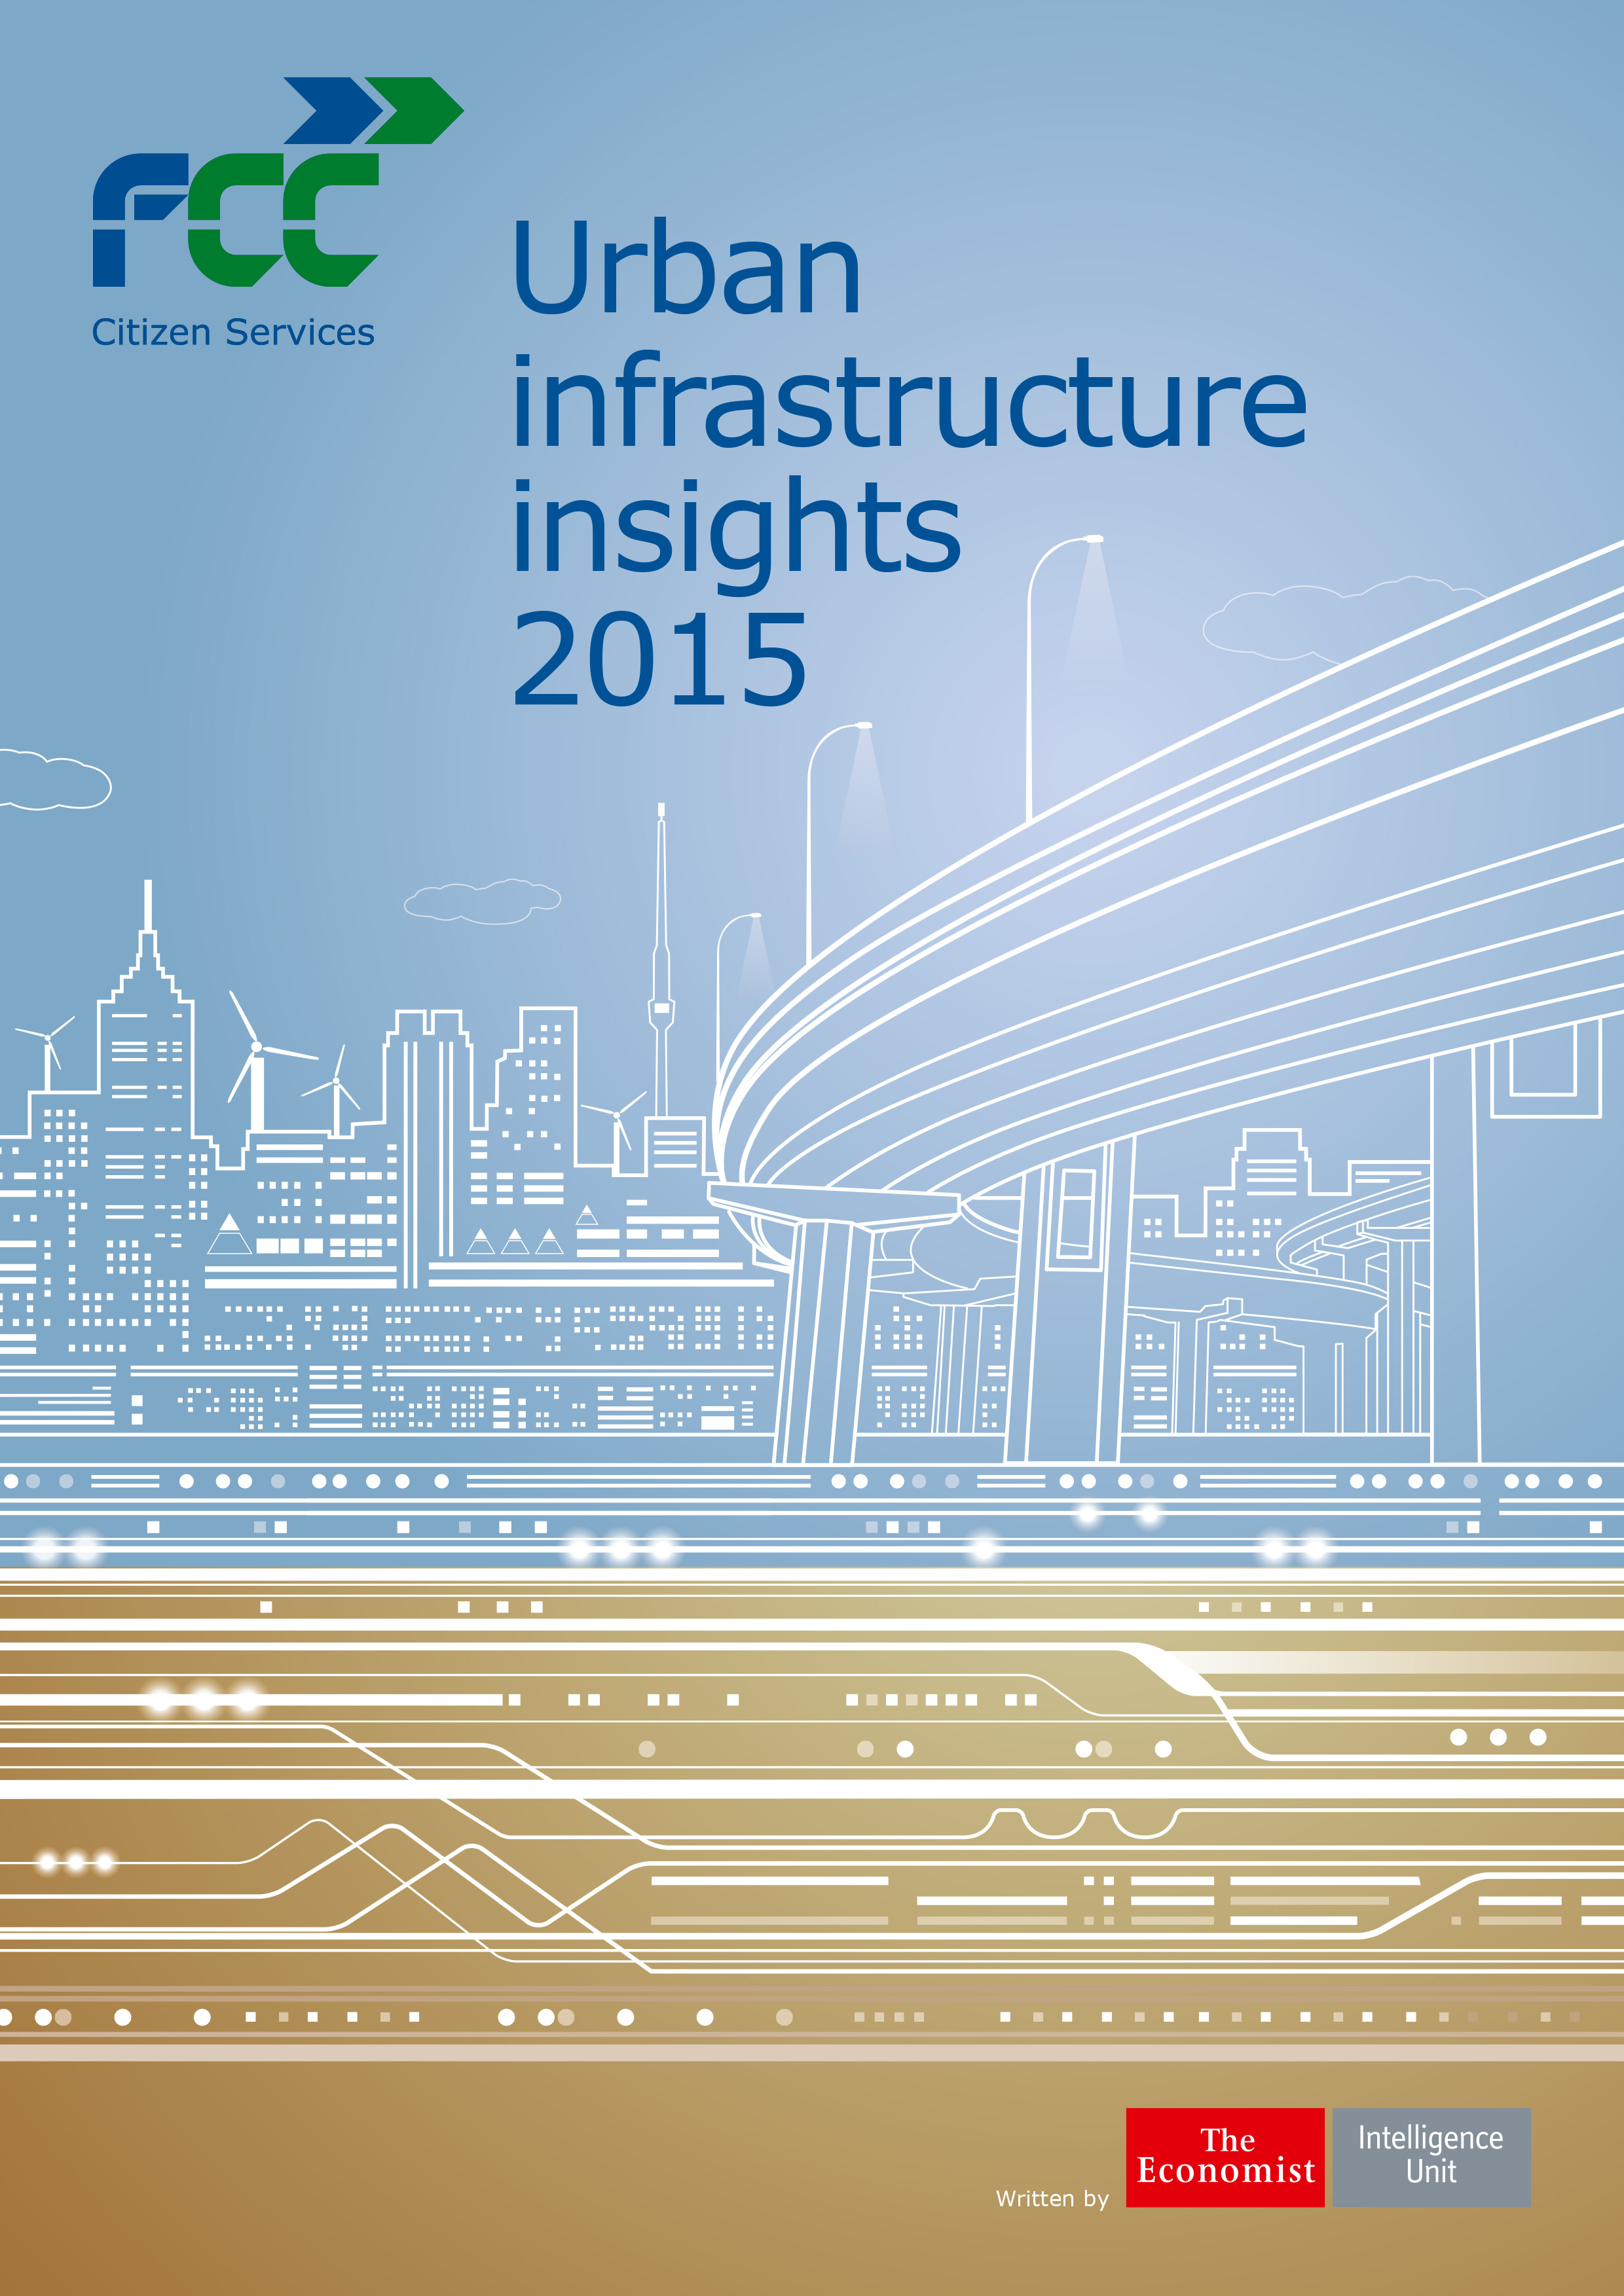 FCC y The Economist analizan las tendencias y  desafíos de las infraestructuras urbanas